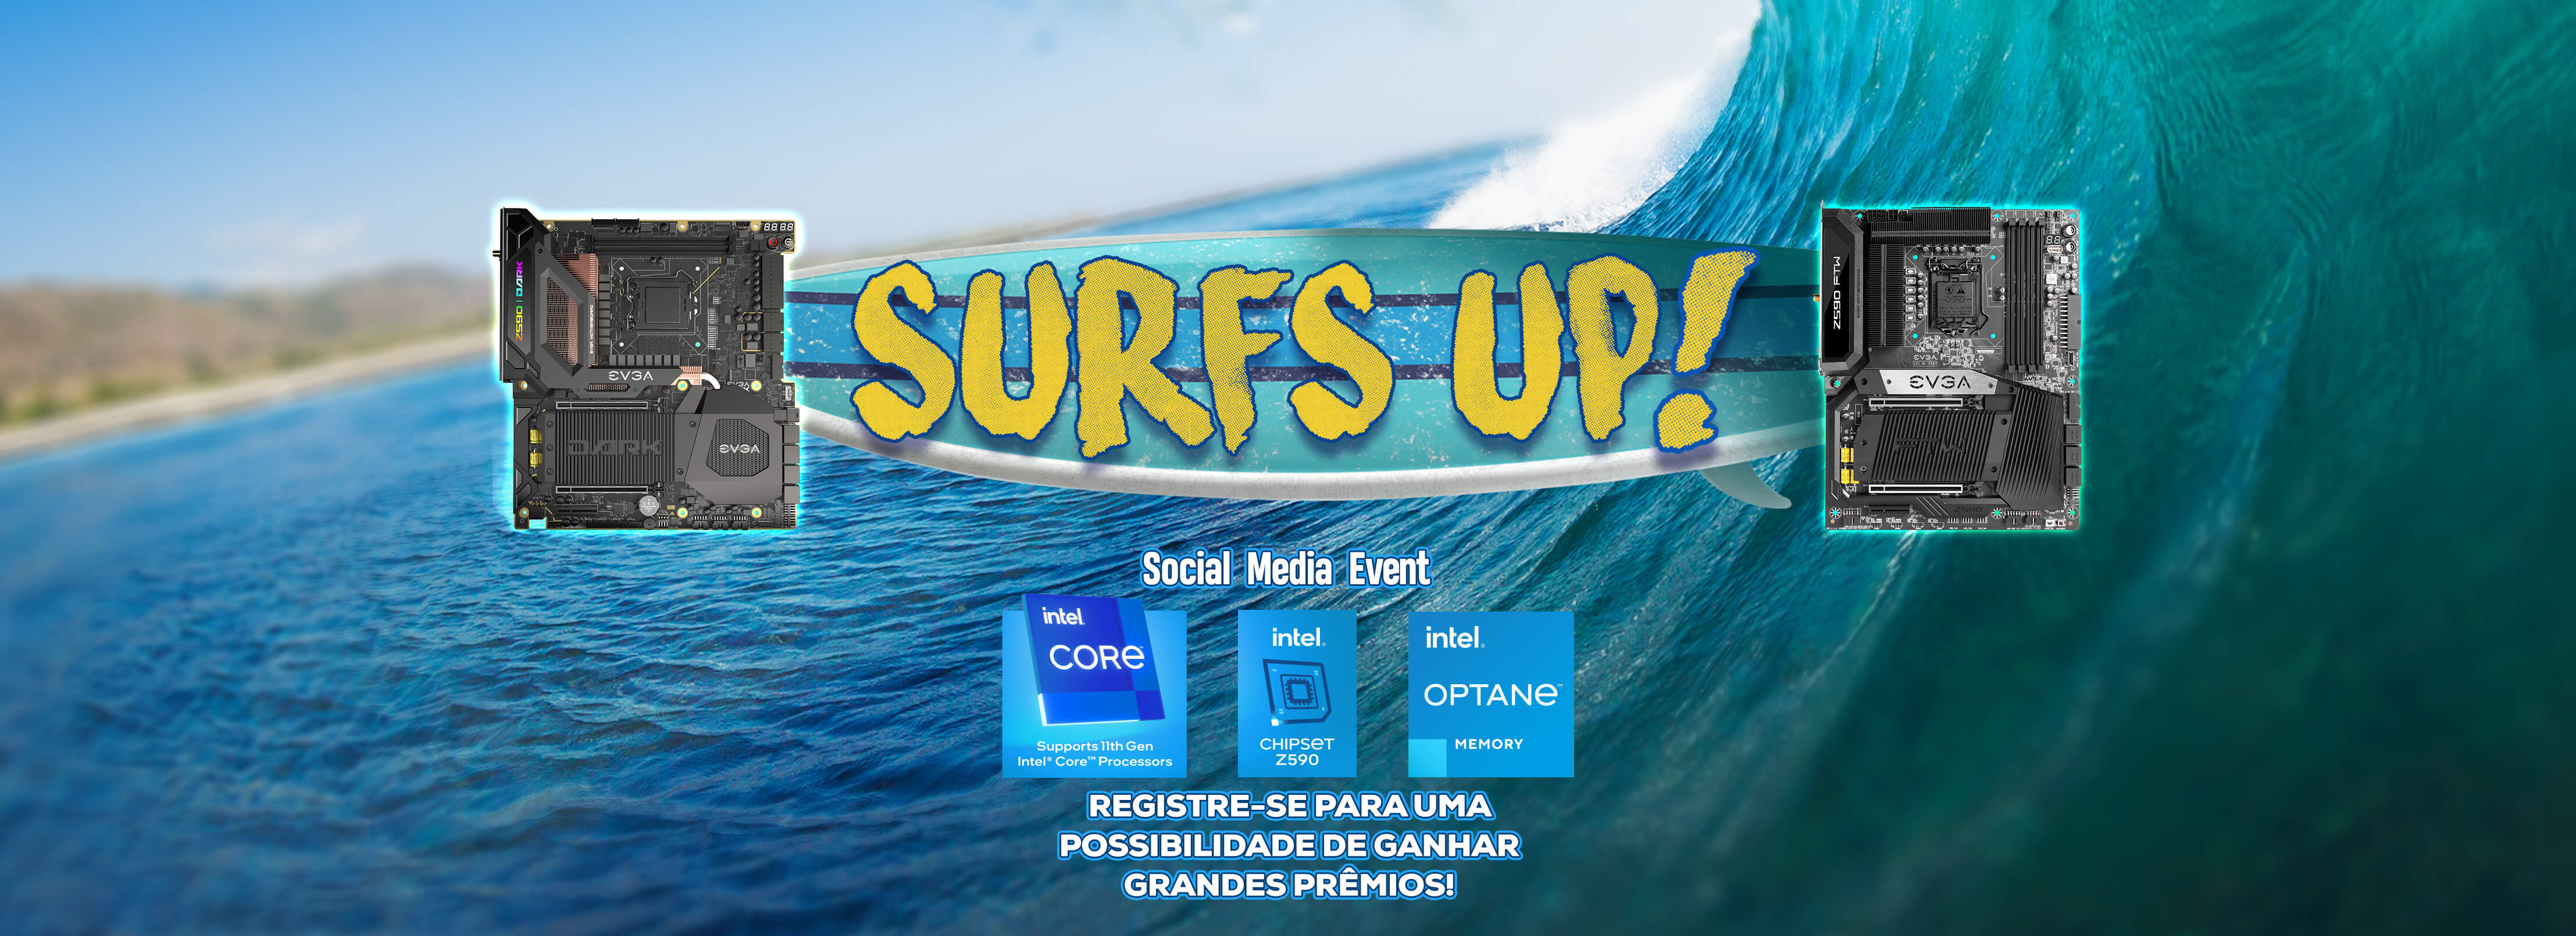 Surfs Up Social Media Event